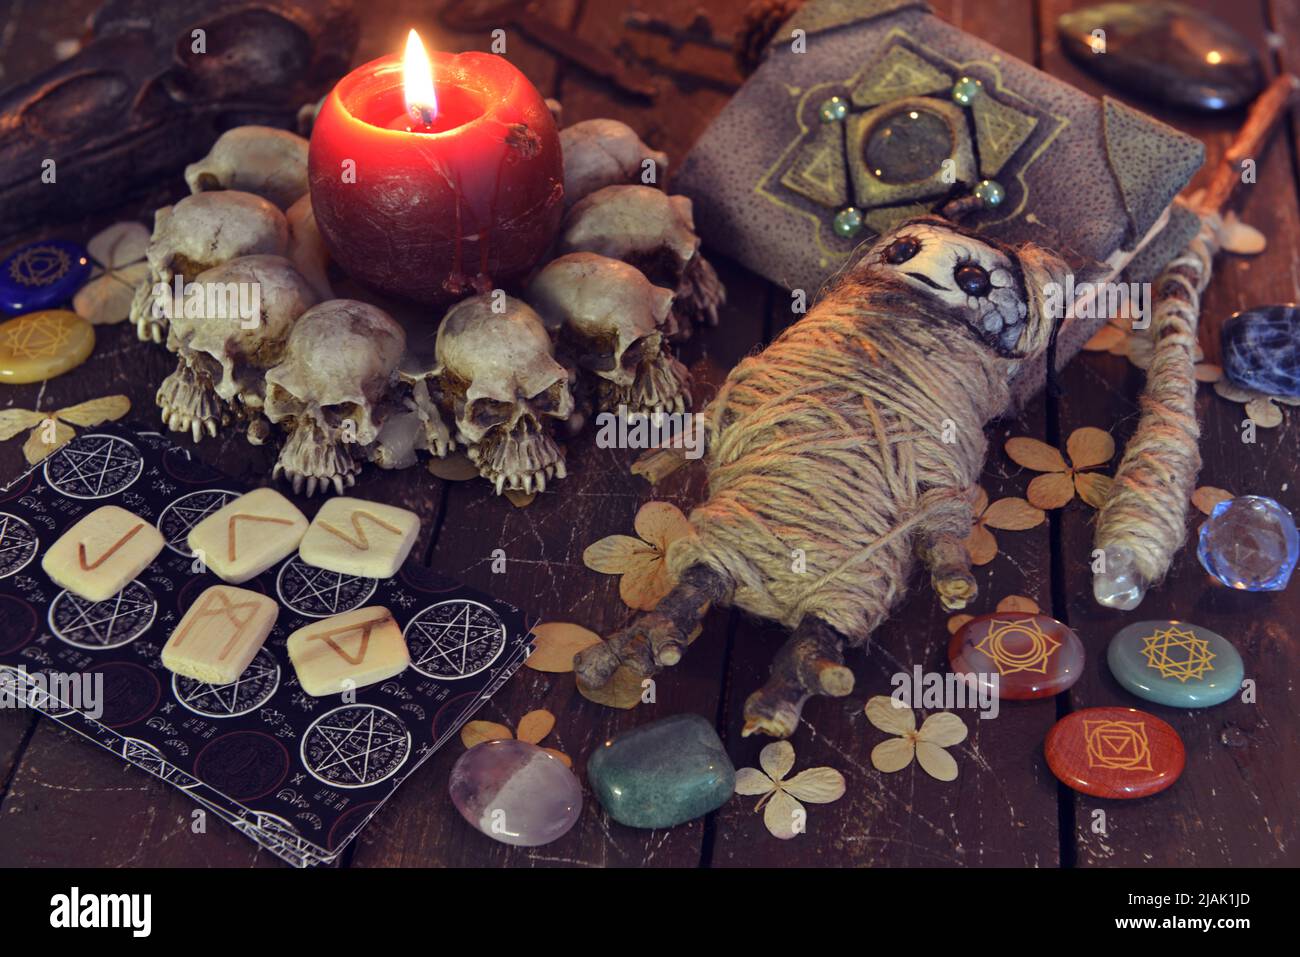 Wicca, esoterisches und okkultes Stillleben mit Vintage-Zauberobjekten und Voodoo-Puppe auf Hexentischaltar für mystische Rituale und Wahrsagerei. Hallowee Stockfoto